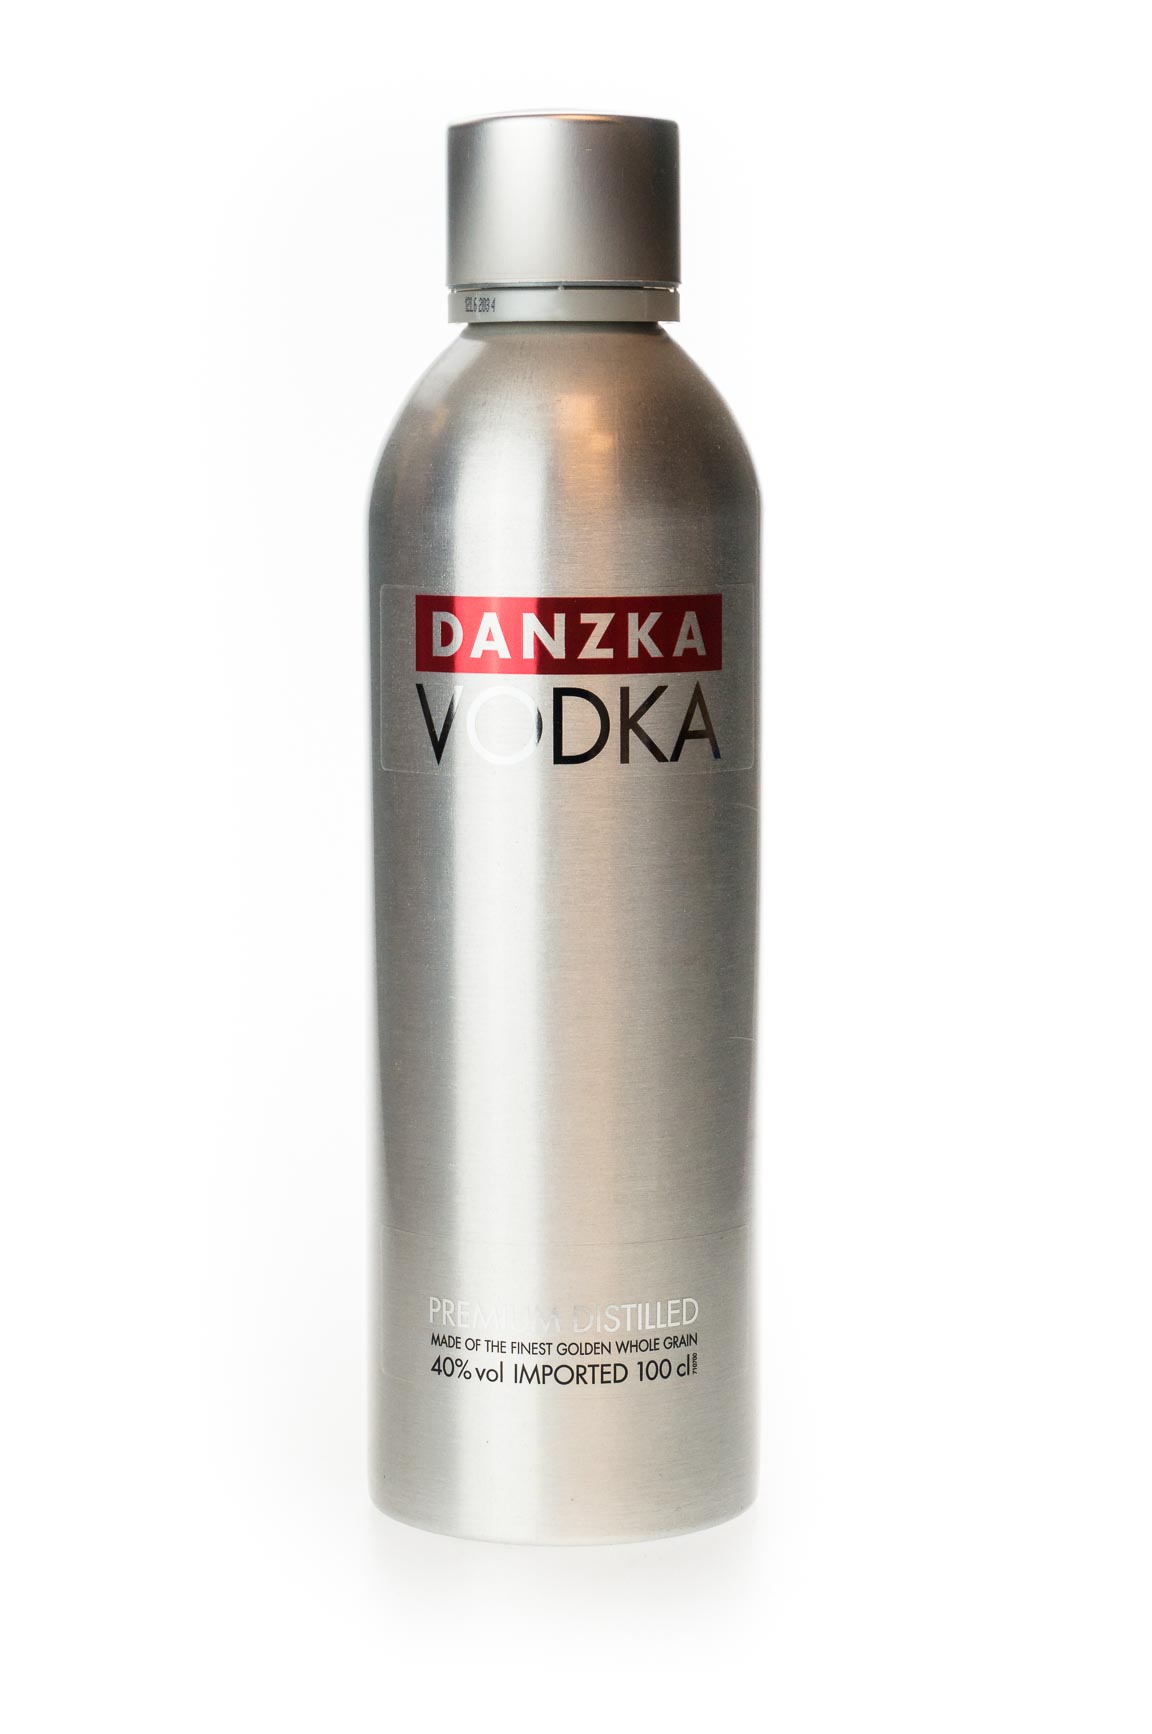 Danzka Vodka Premium Distilled günstig kaufen (1L)